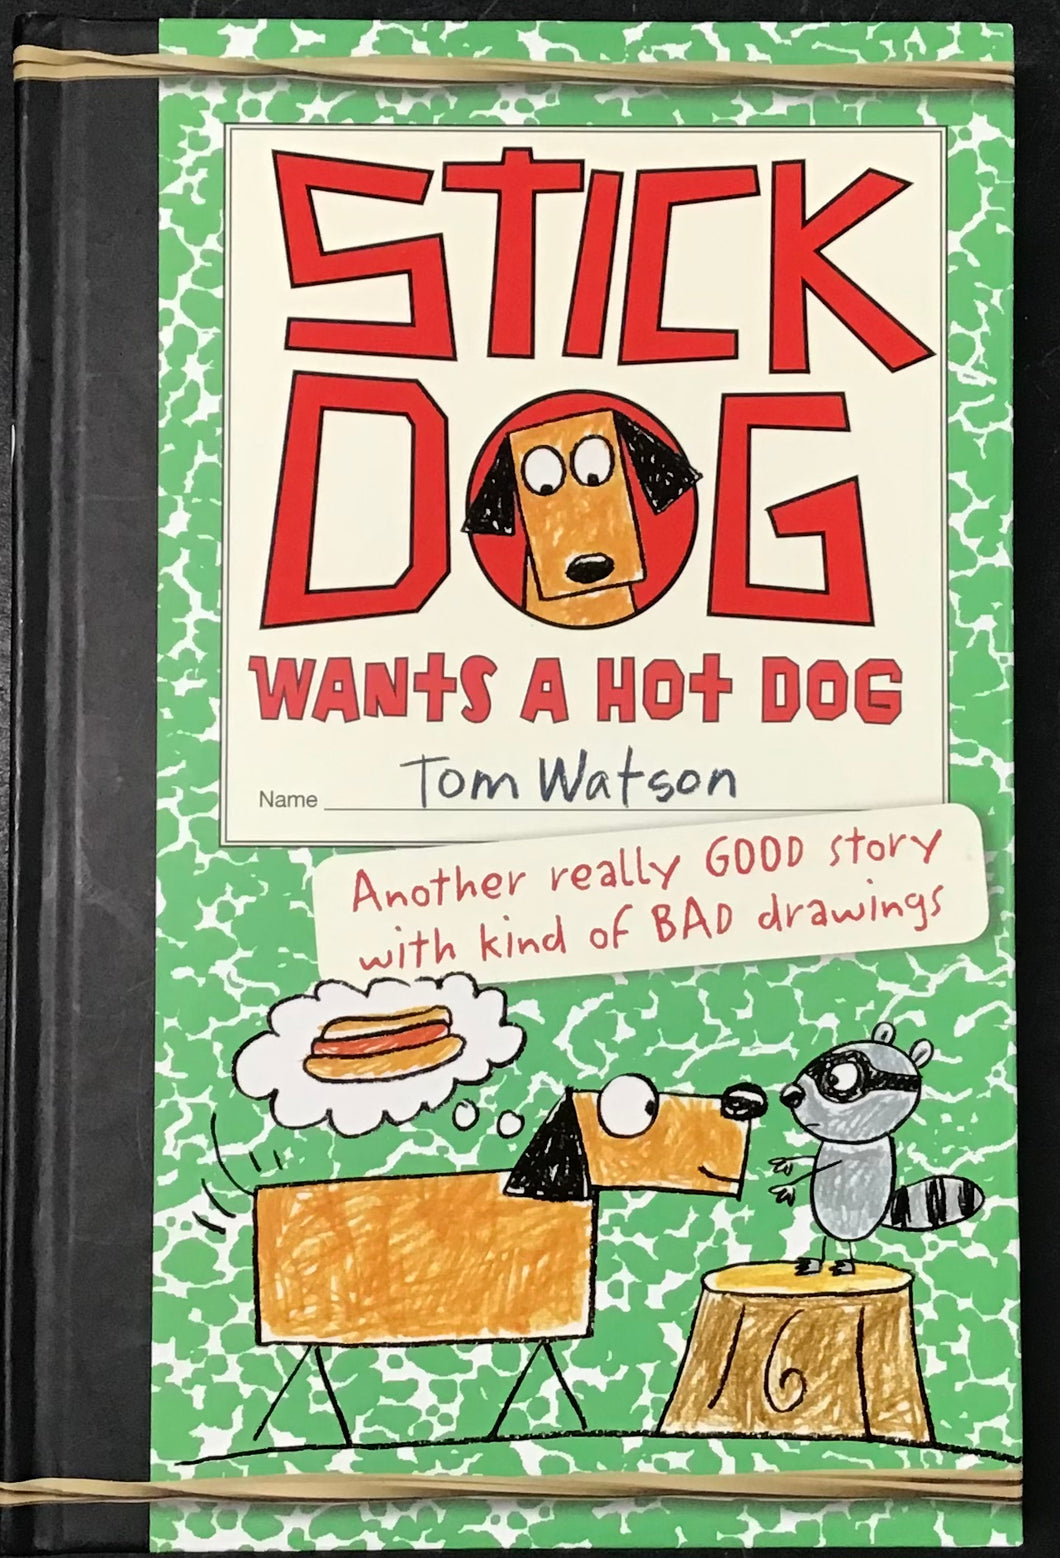 Stick Dog, Tom Watson